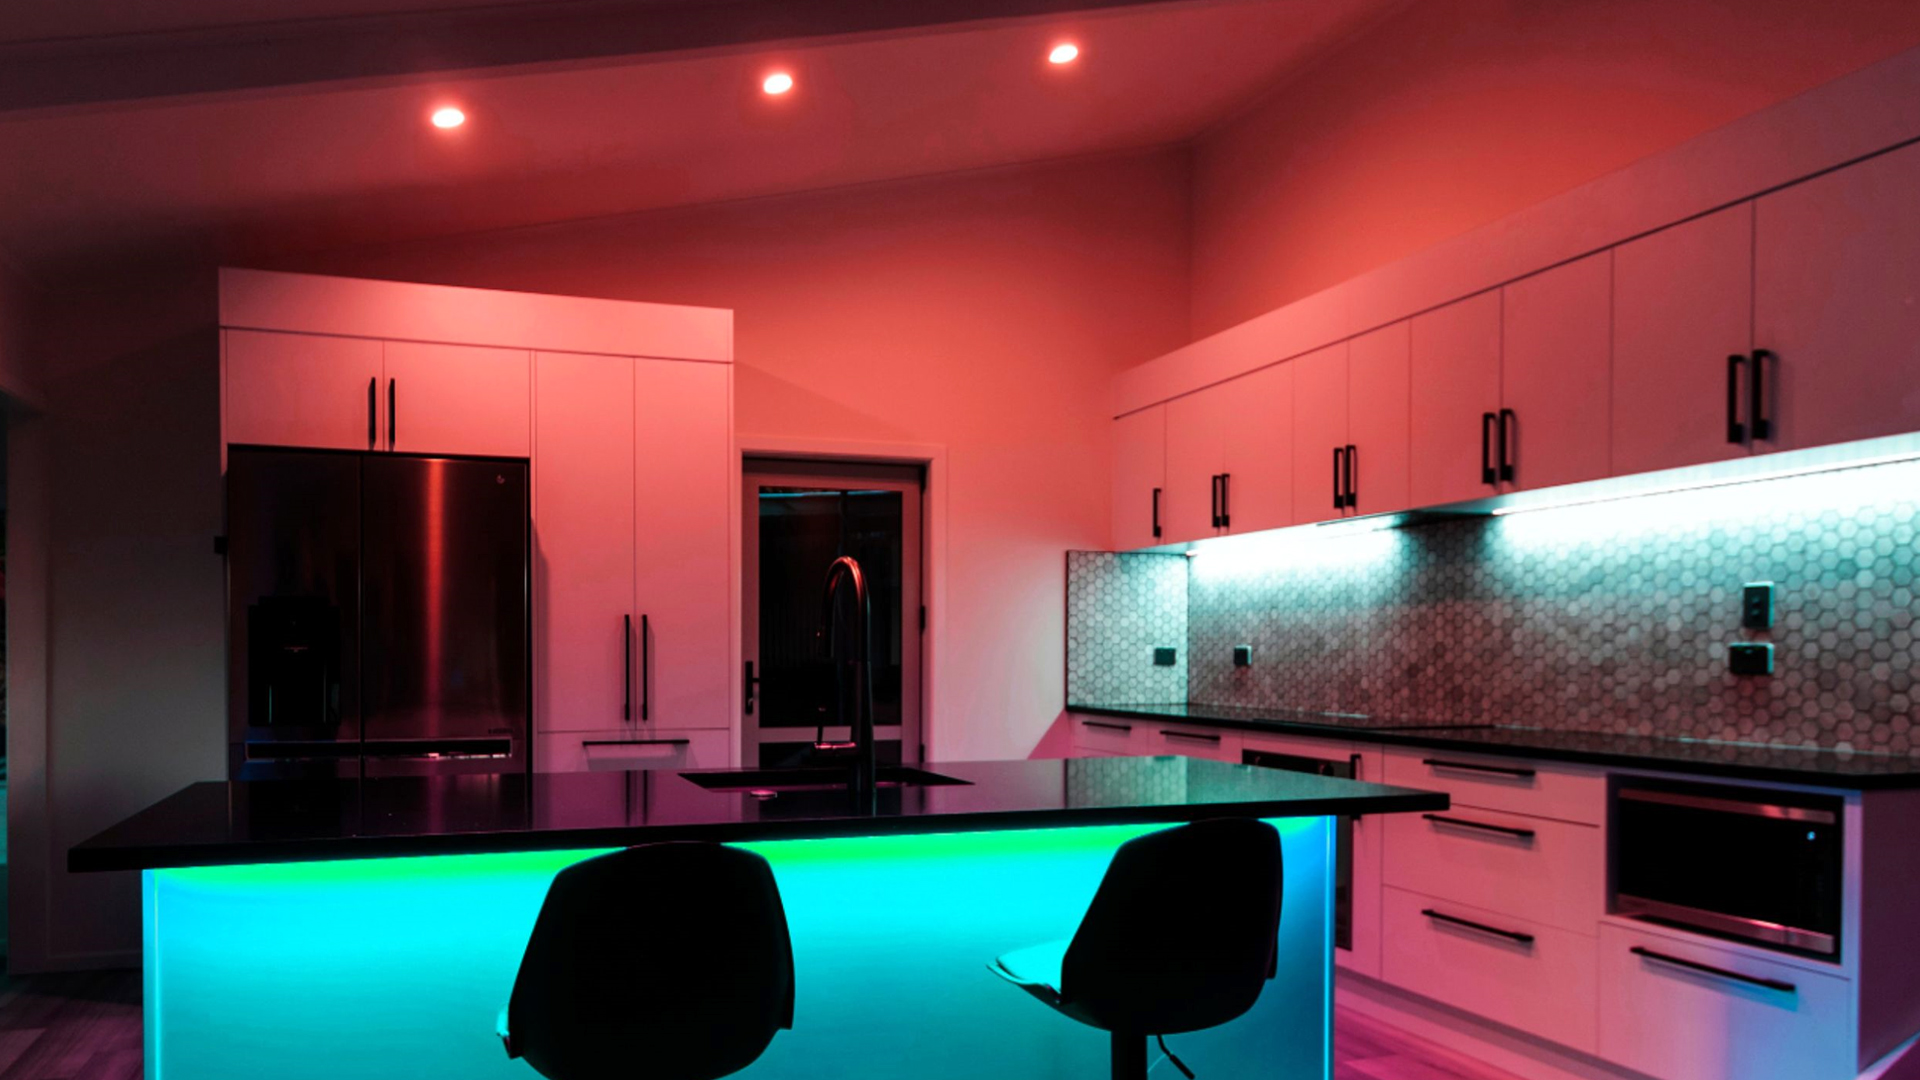 Una cocina iluminada con tiras de luz y bombillas inteligentes Lifx